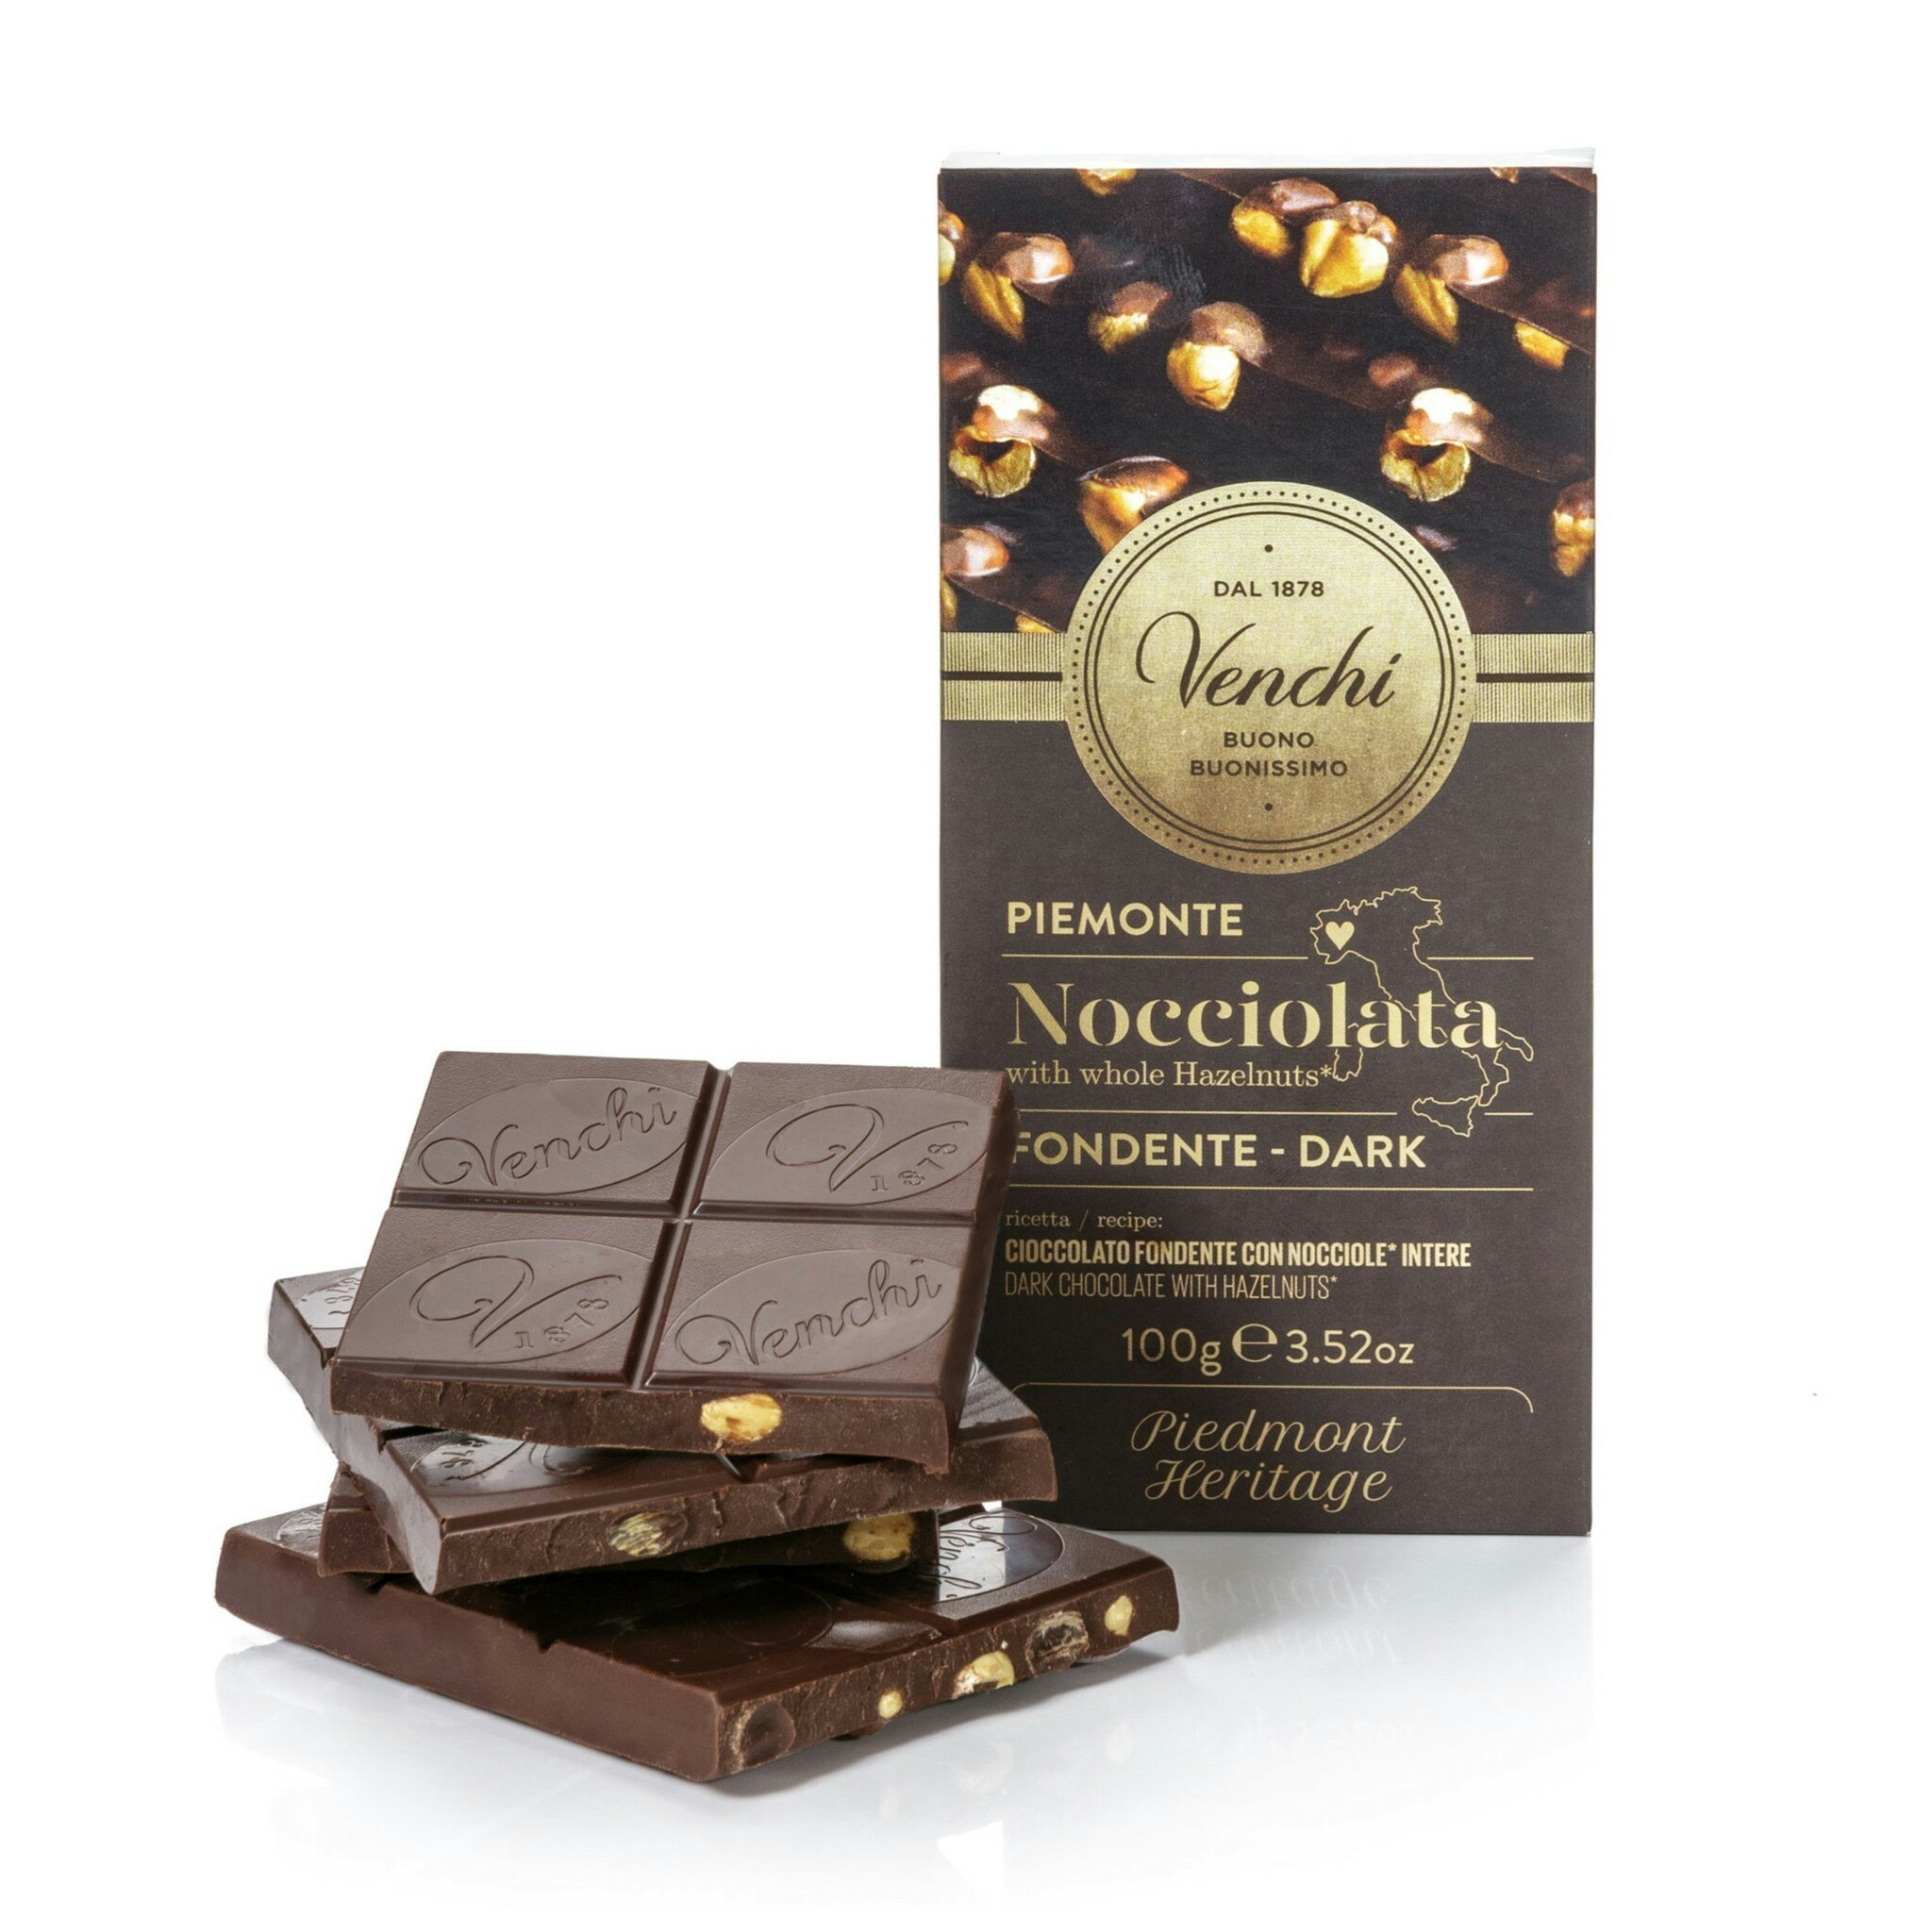 En chokladkaka av mörk choklad med hela hasselnötter.